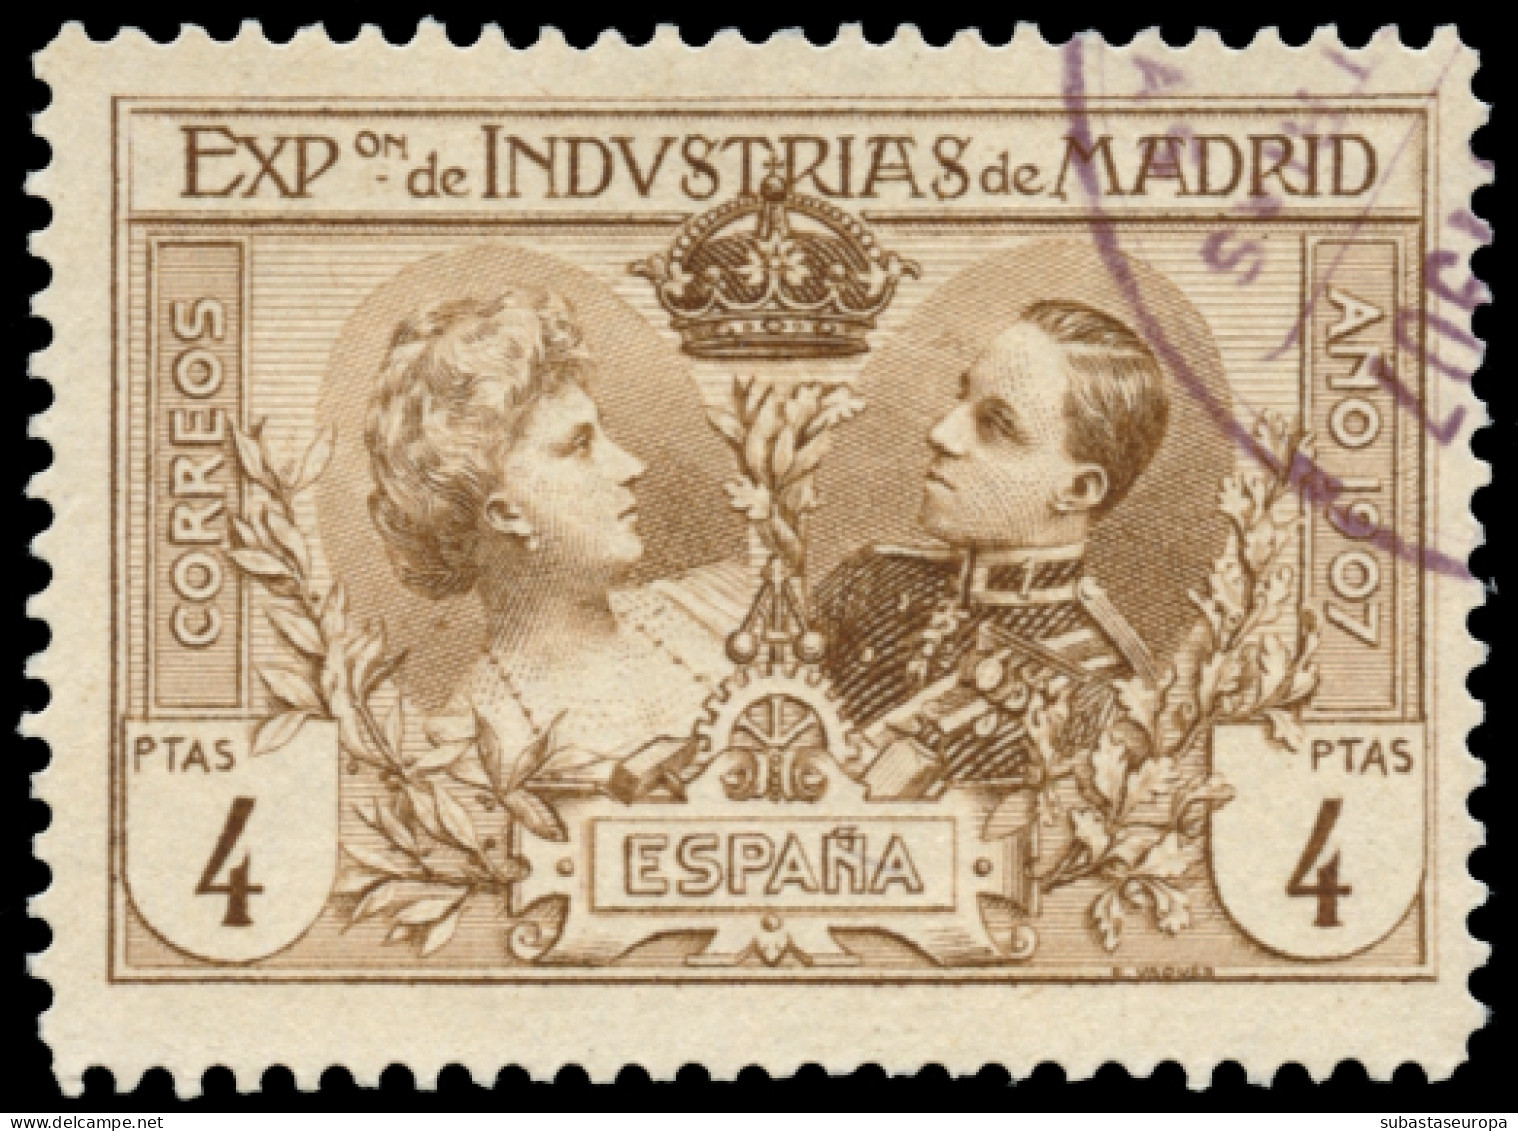 Ø S.R. 1/6. Expo Industrias. Bonita. - Used Stamps